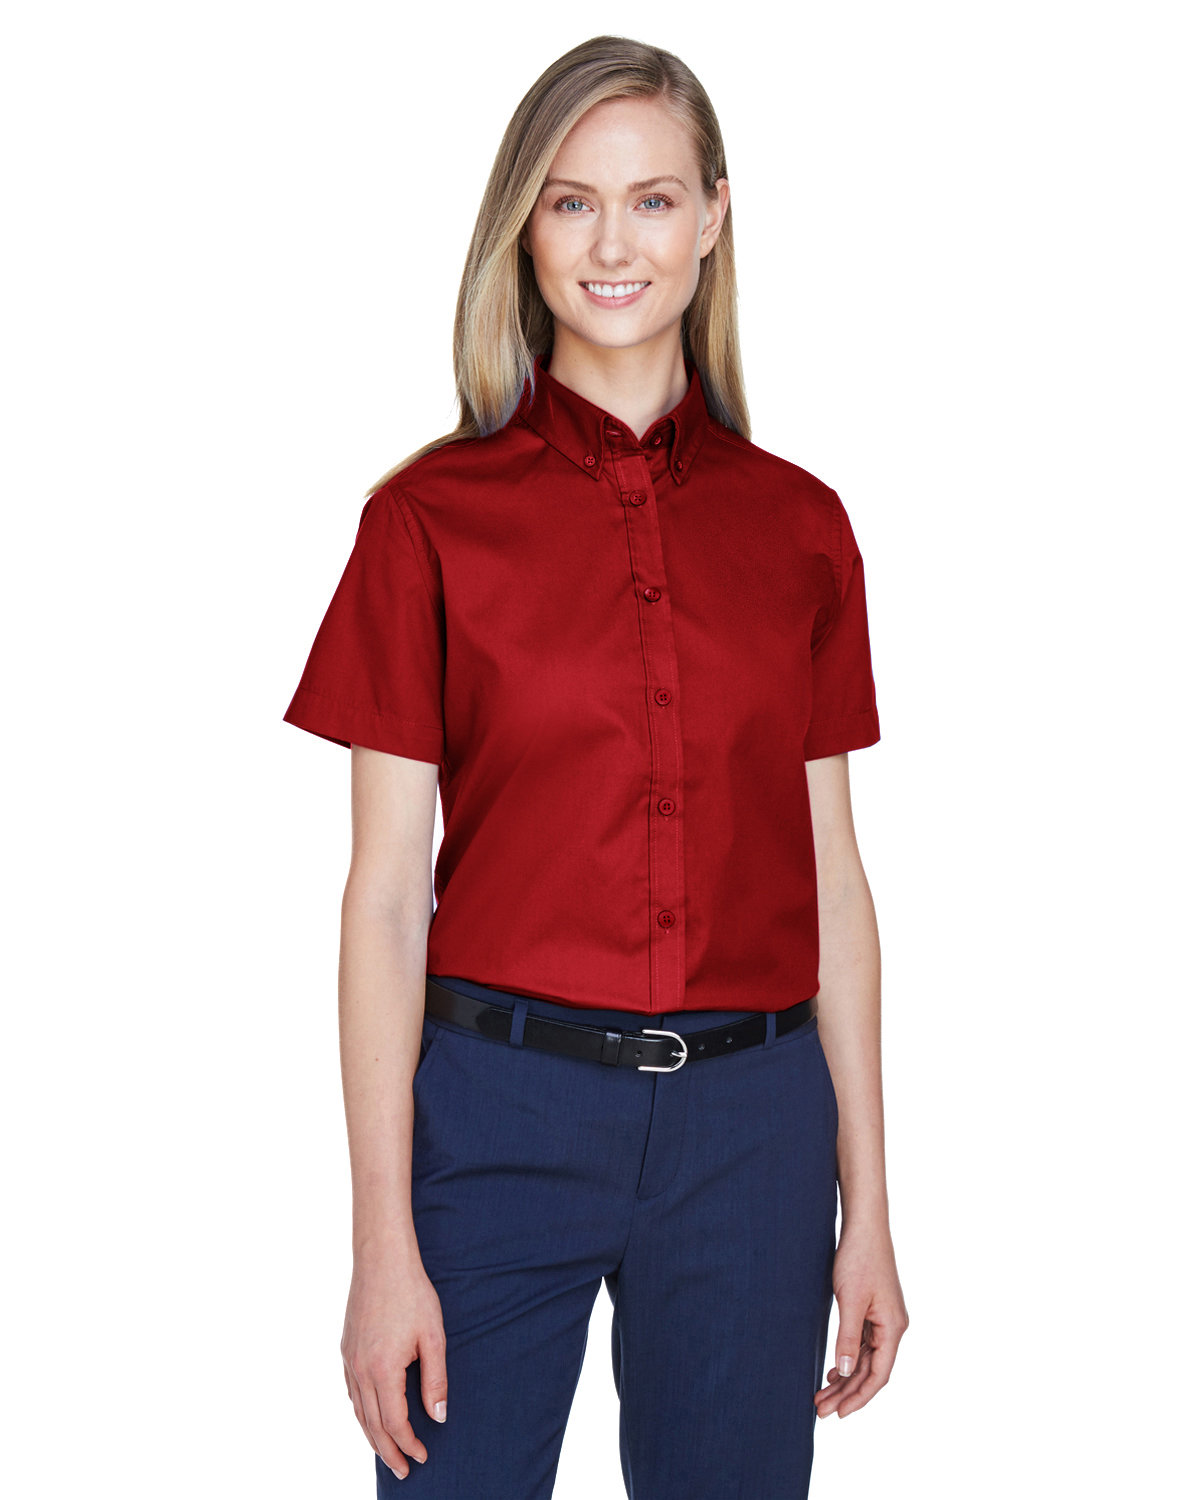 Core365 Ladies' Optimum Short-Sleeve Twill Shirt CLASSIC RED 